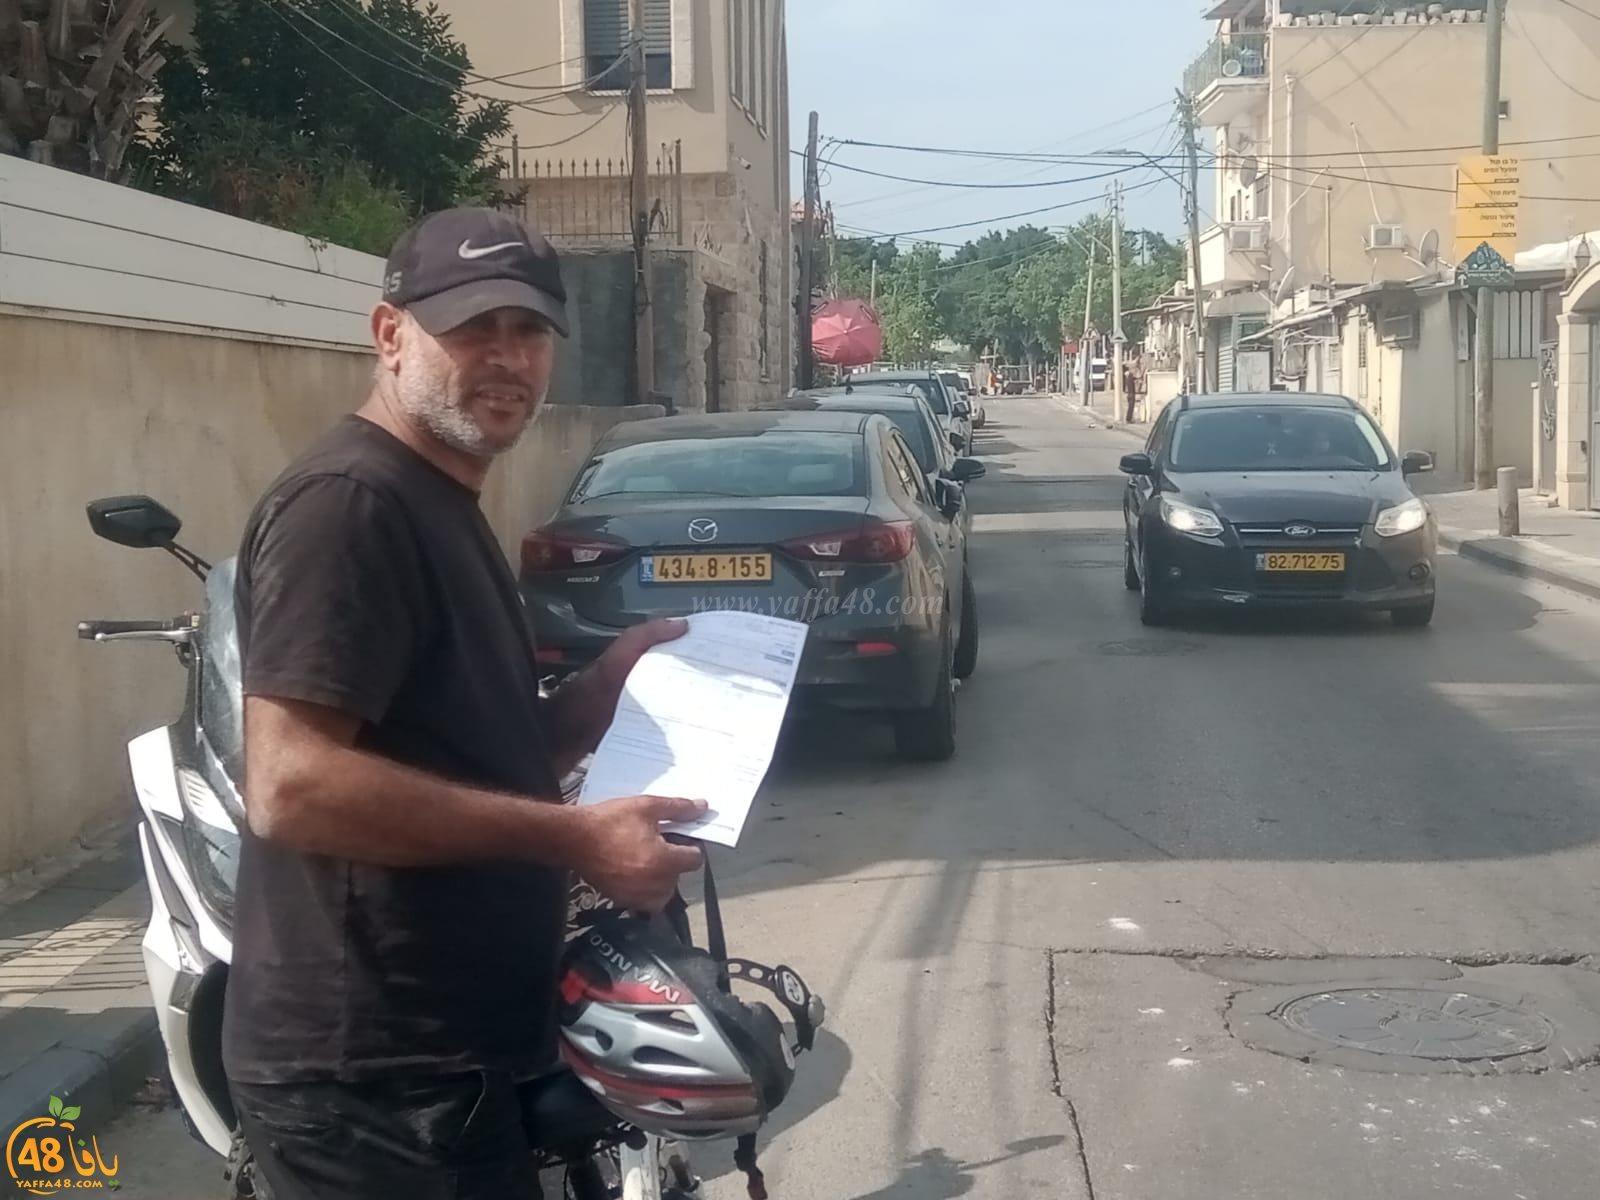   فيديو: مواطن من يافا شرطي اسقطني عن الدراجة الكهربائية وحرر مخالفة ضدي